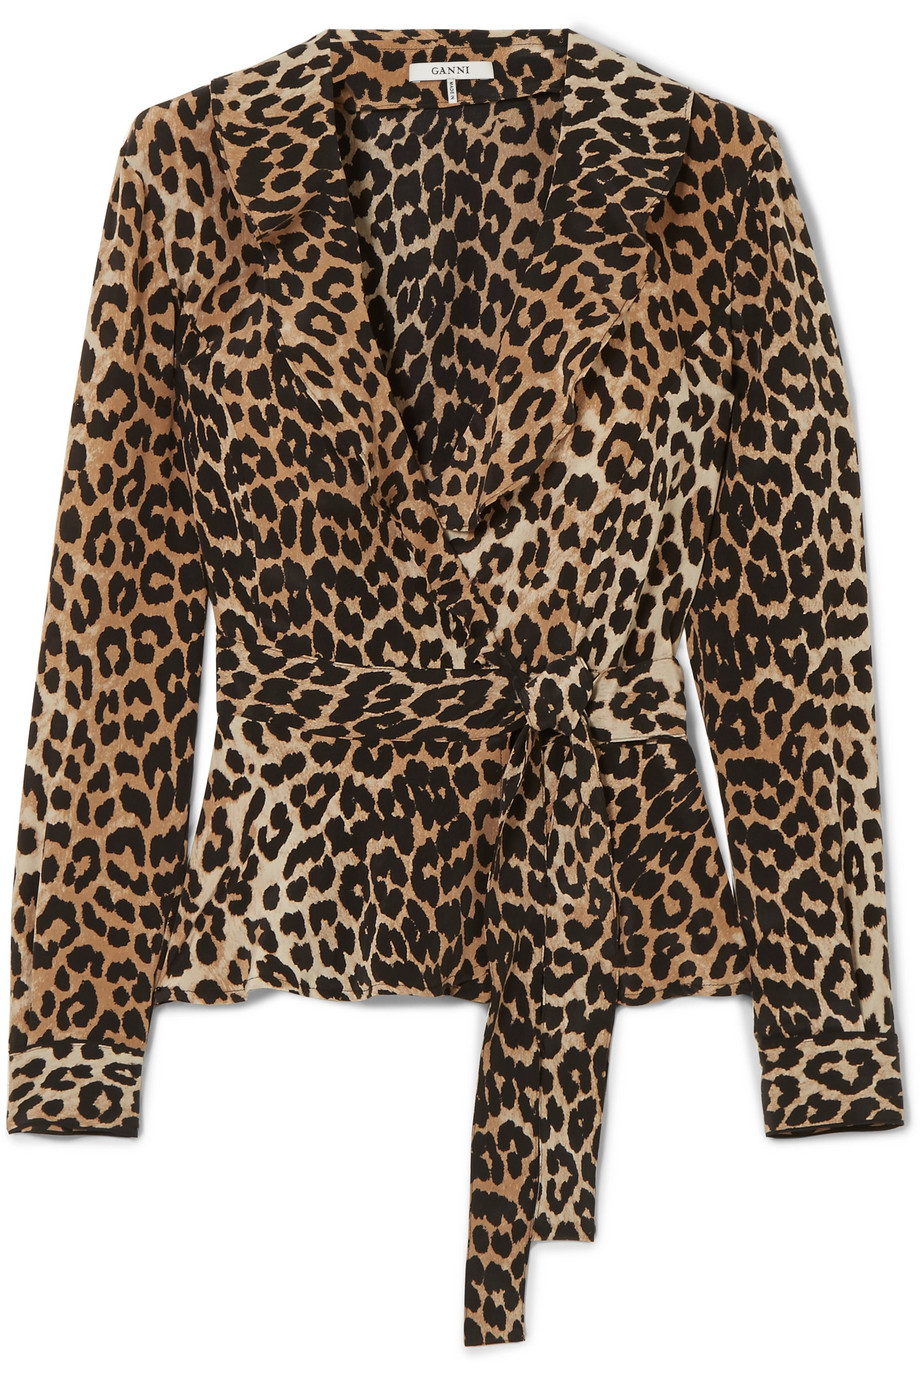 Margot Robbie Wearing Leopard Print Mini Dress | Who What Wear UK